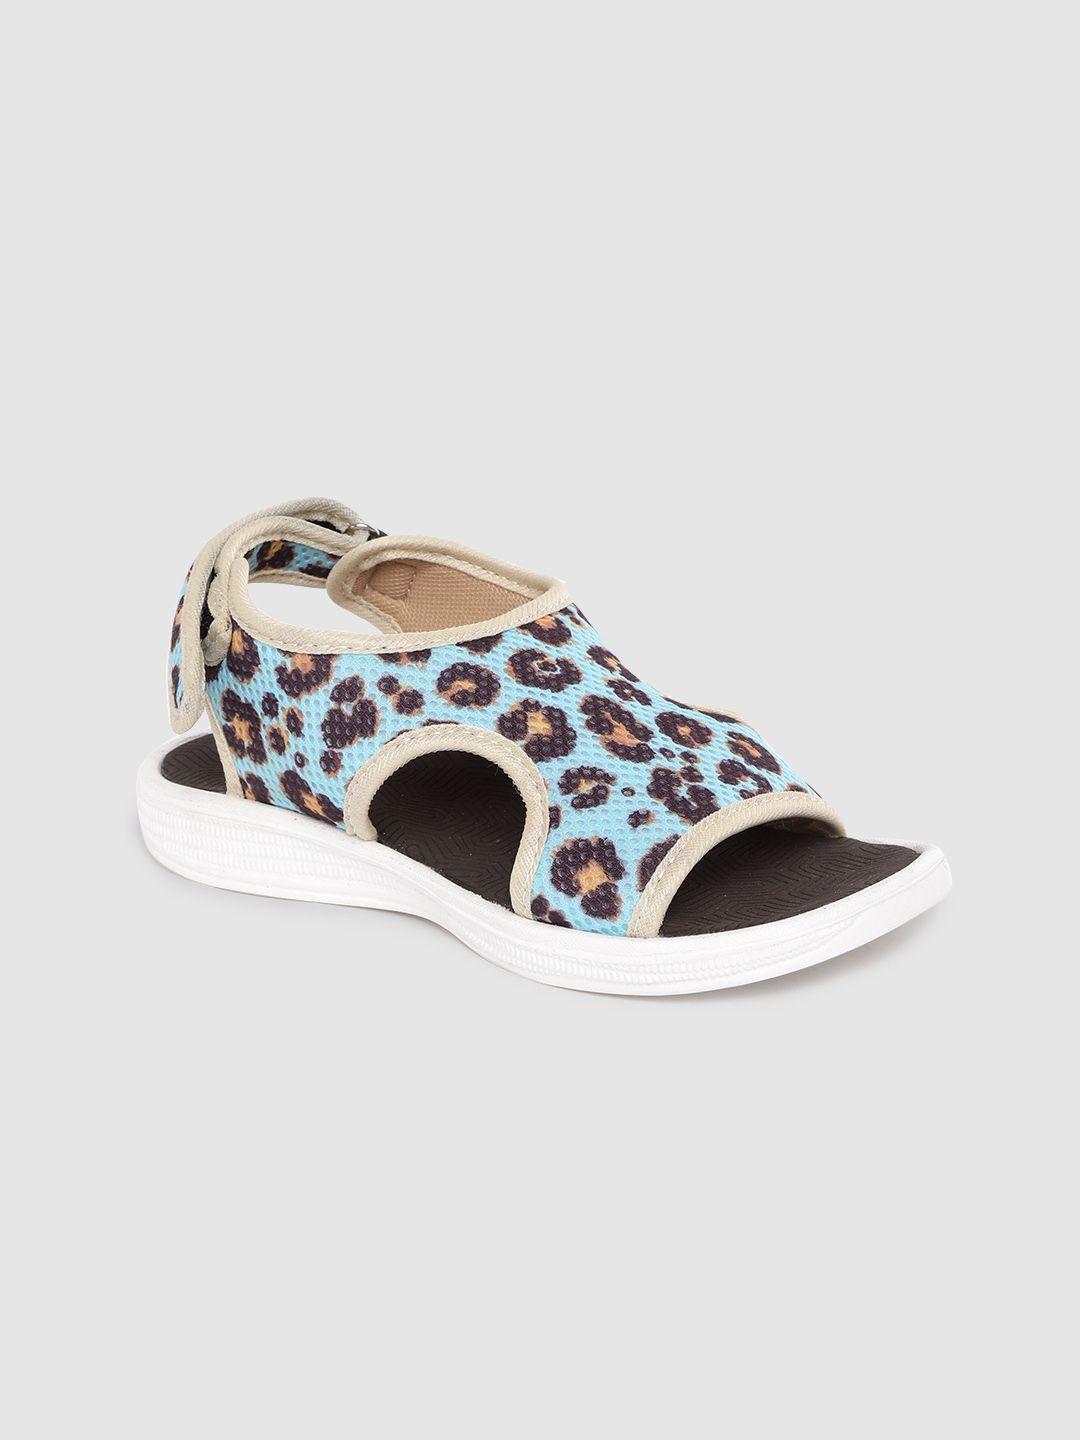 kook n keech women blue & coffee brown leopard print sports sandals